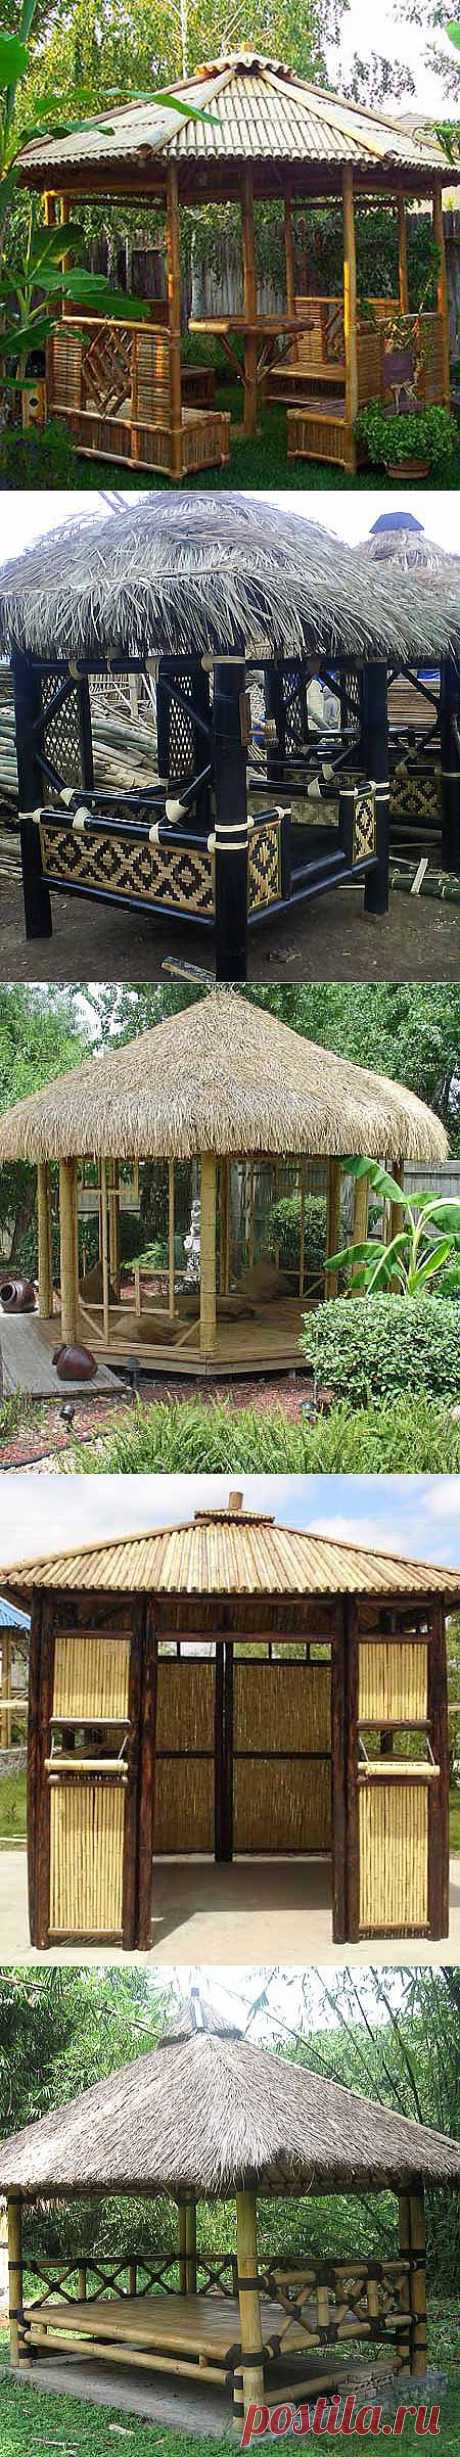 Необычные садовые беседки: 10 беседок в восточном стиле из бамбука | ВСЁ ДЛЯ ДОМА